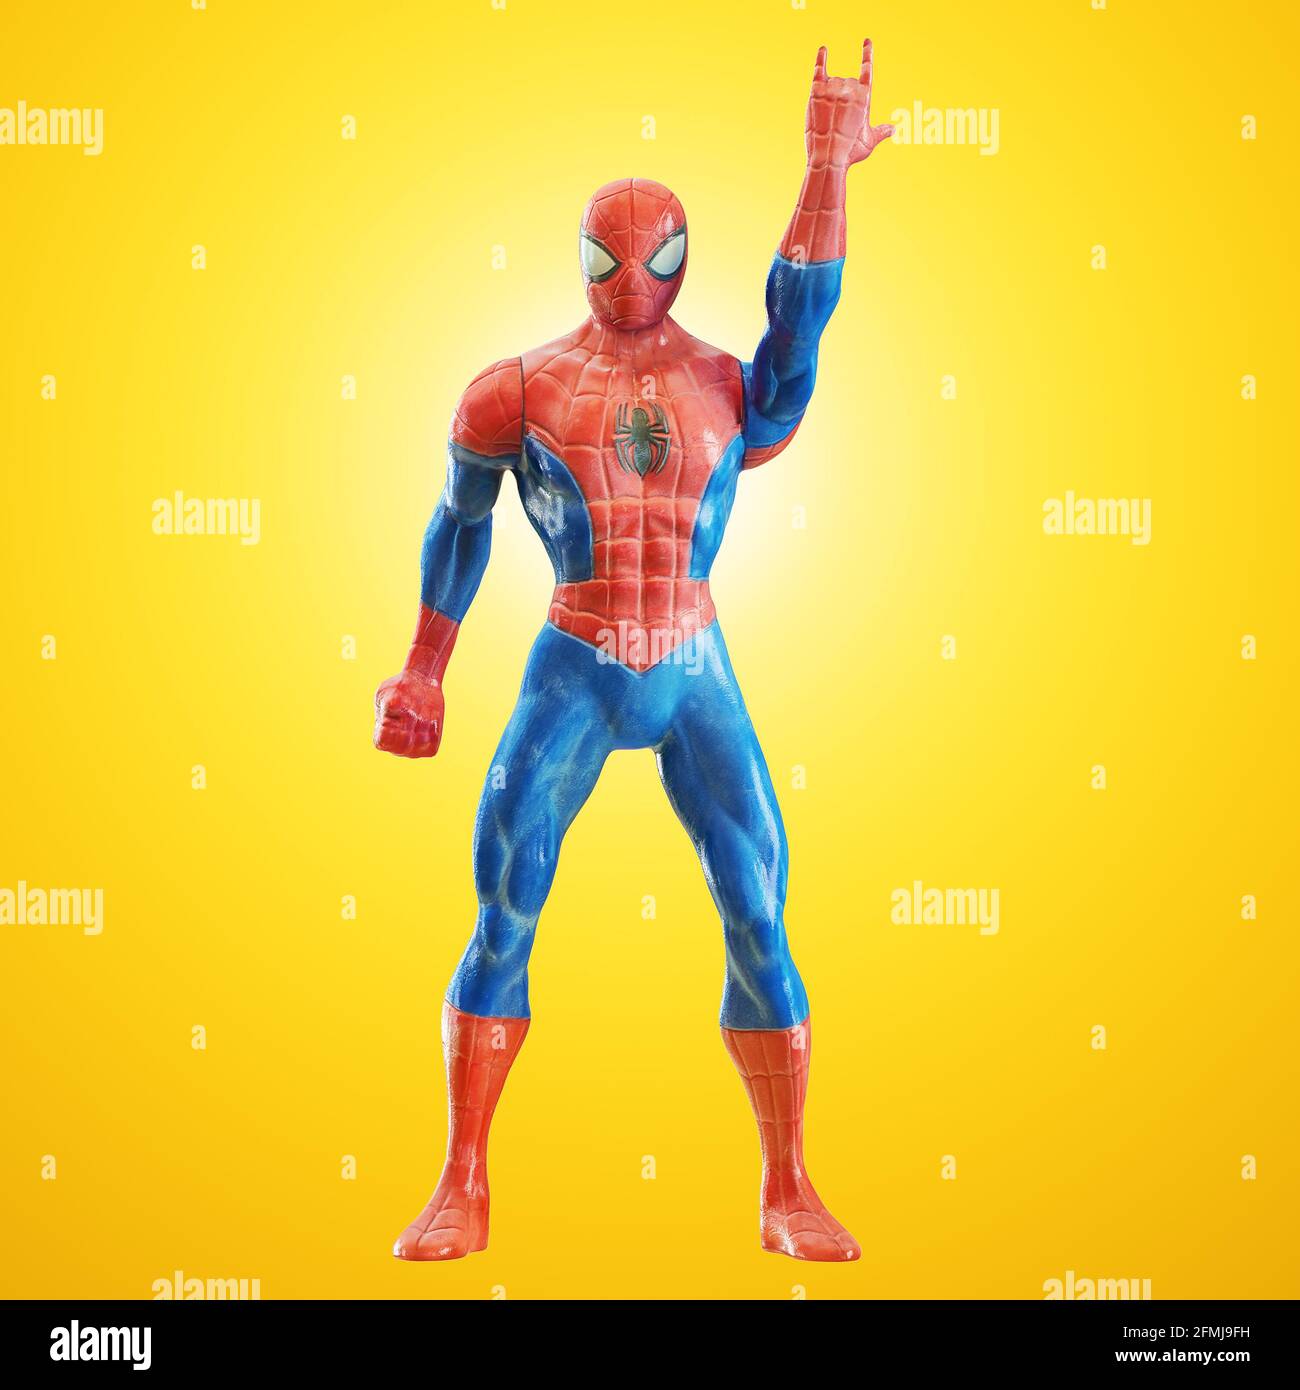 Spiderman de jouet avec la main levée montrant le rock et le